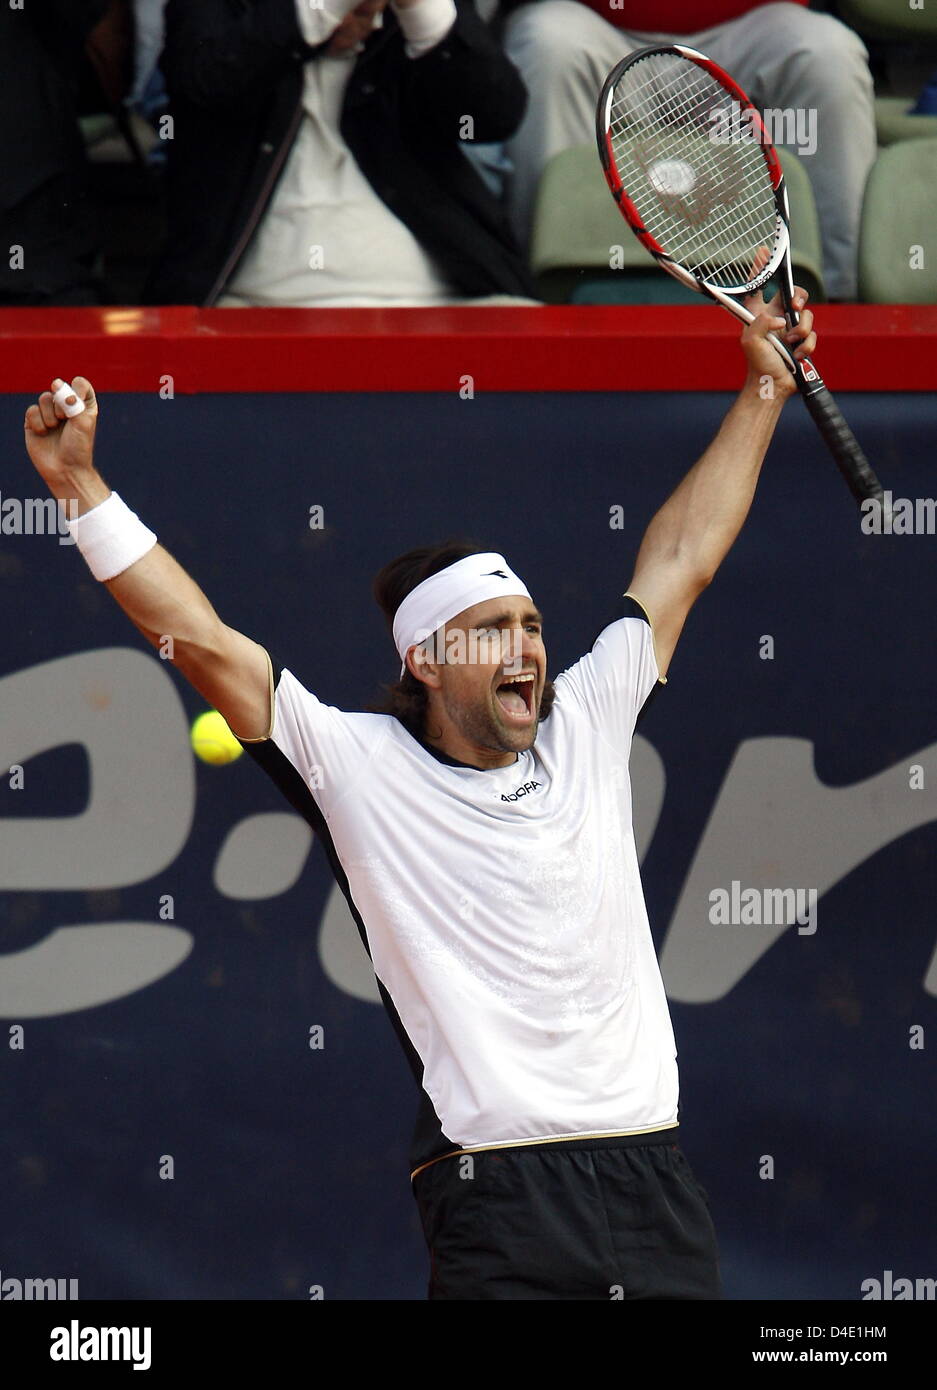 Il tedesco Nicolas KIEFER celebra la sua vittoria sul russo Davydenko durante gli ultimi sedici round di ATP Masters Series di Amburgo, Germania, 15 maggio 2008. Kiefer ha vinto 7-5 e 6-3. Foto: Marcus Brandt Foto Stock